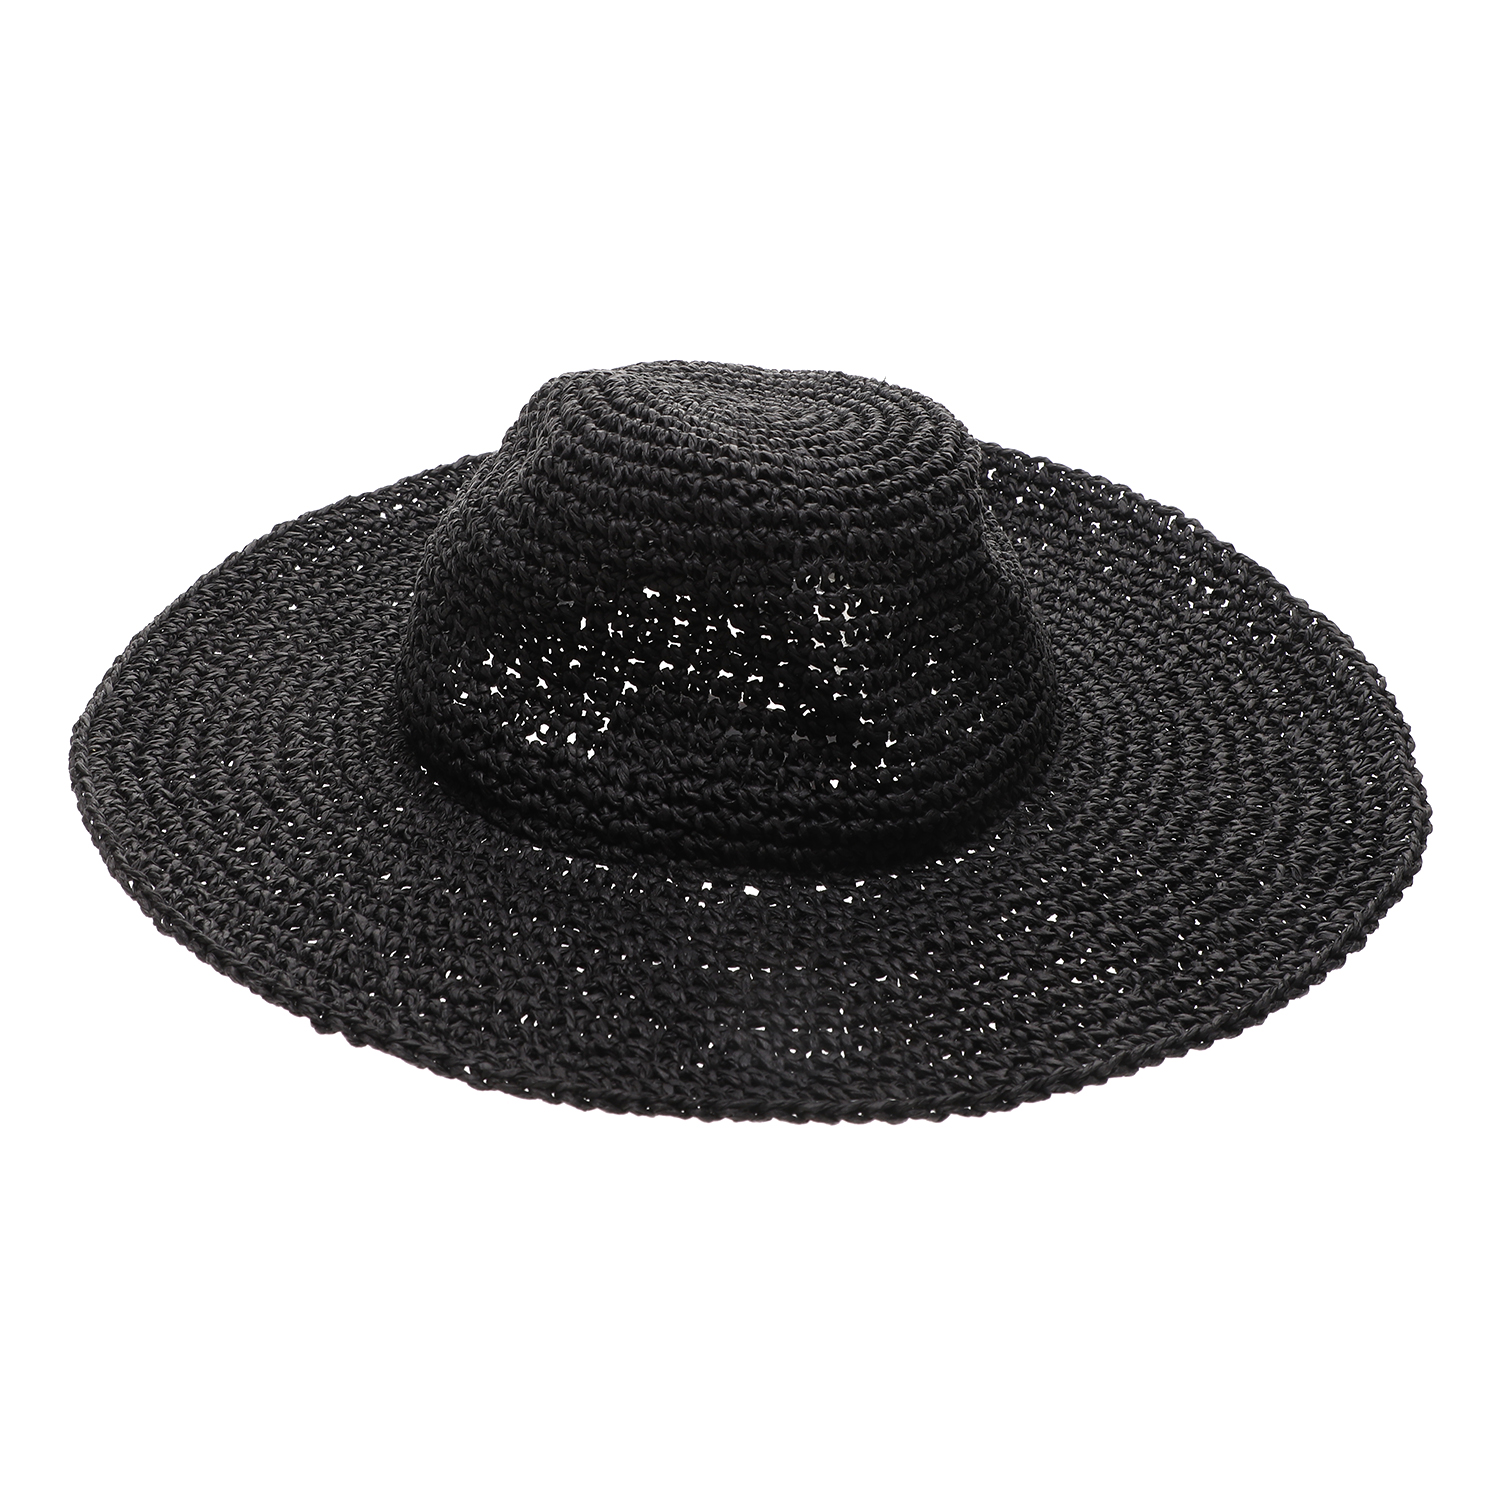 ECHO – Γυναικείο καπέλο ECHO PACKABLE CROCHET μαύρο